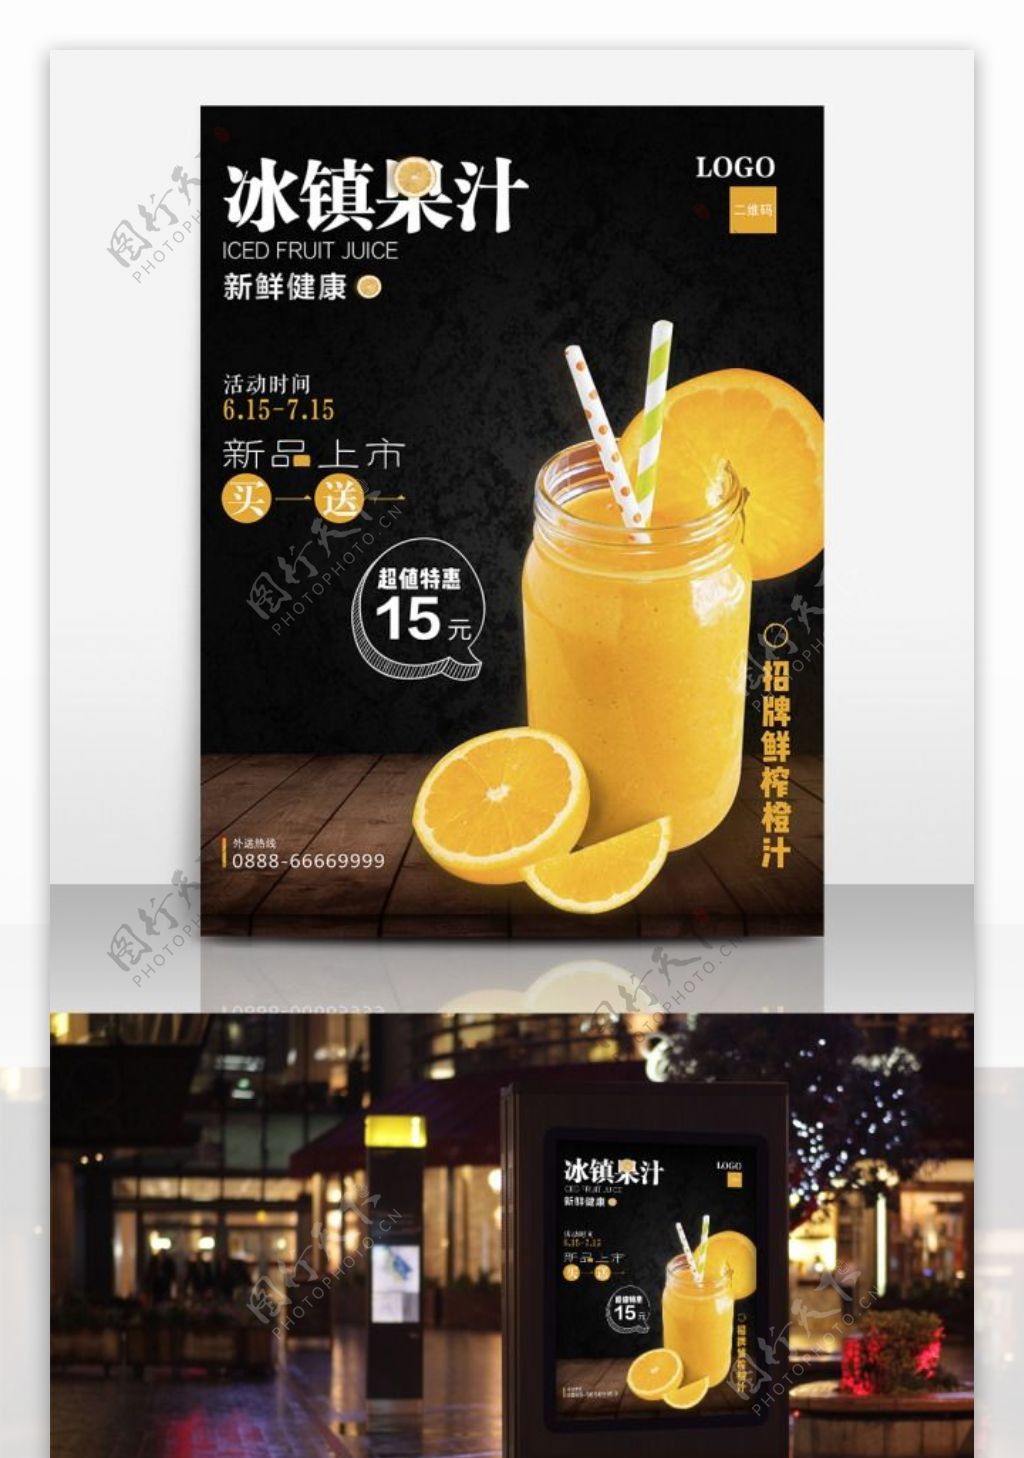 橙汁奶茶饮品饮料促销活动海报模板